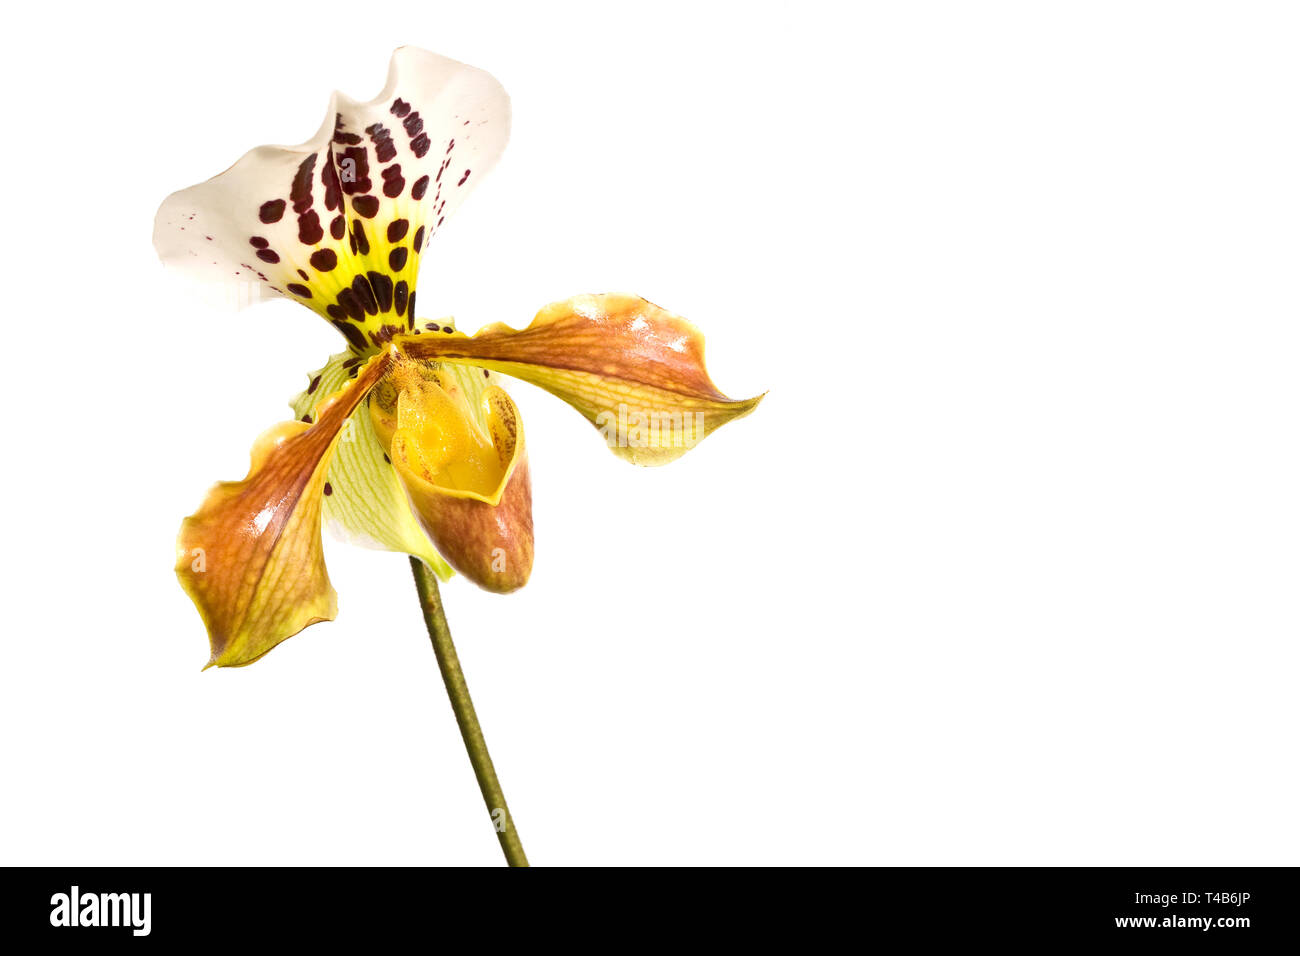 Gelb Lady Slipper (paphiopedilum) Orchidee, close-up auf weißem Hintergrund Stockfoto